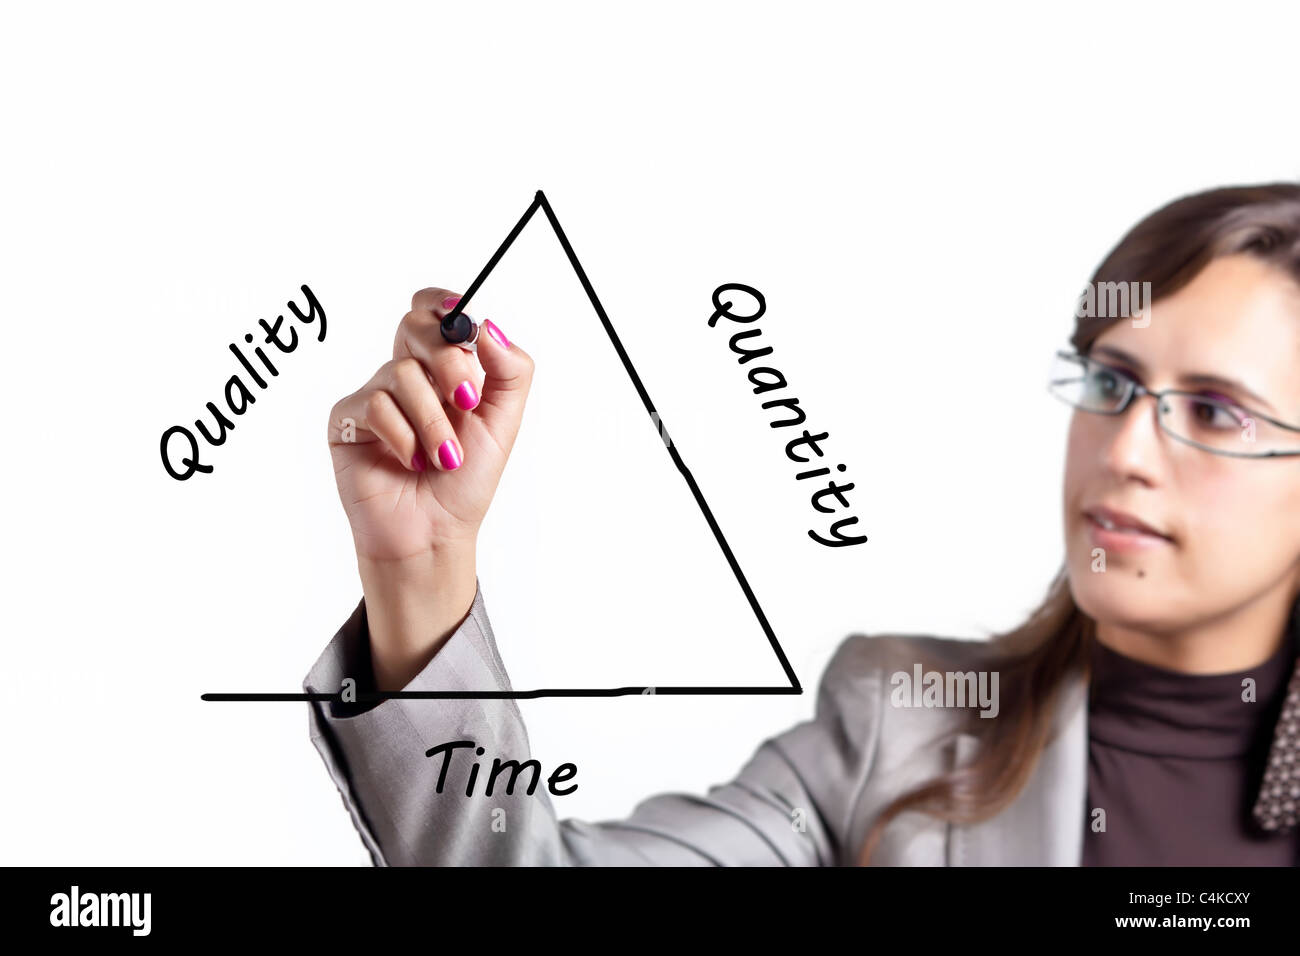 Business-Frau zieht das Dreieck, das die Qualität gegen Quantität Vs Zeit (Geld) Paradigma repräsentieren Stockfoto